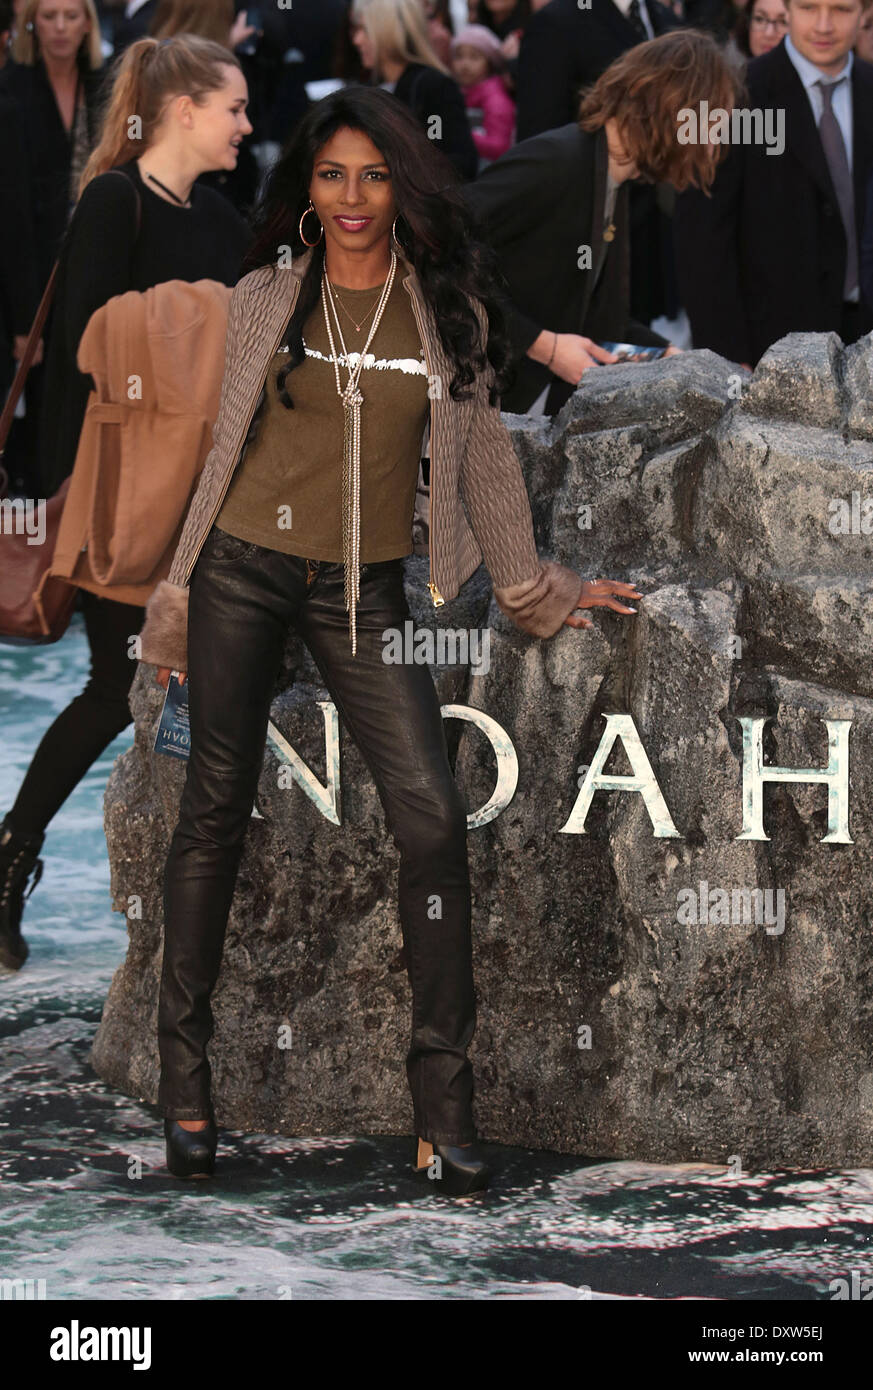 Londres, Royaume-Uni, le 31 mars 2014 Sinitta arrive à la première UK de 'Noah' à l'Odeon Leicester Square Crédit : MRP/Alamy Live News Banque D'Images